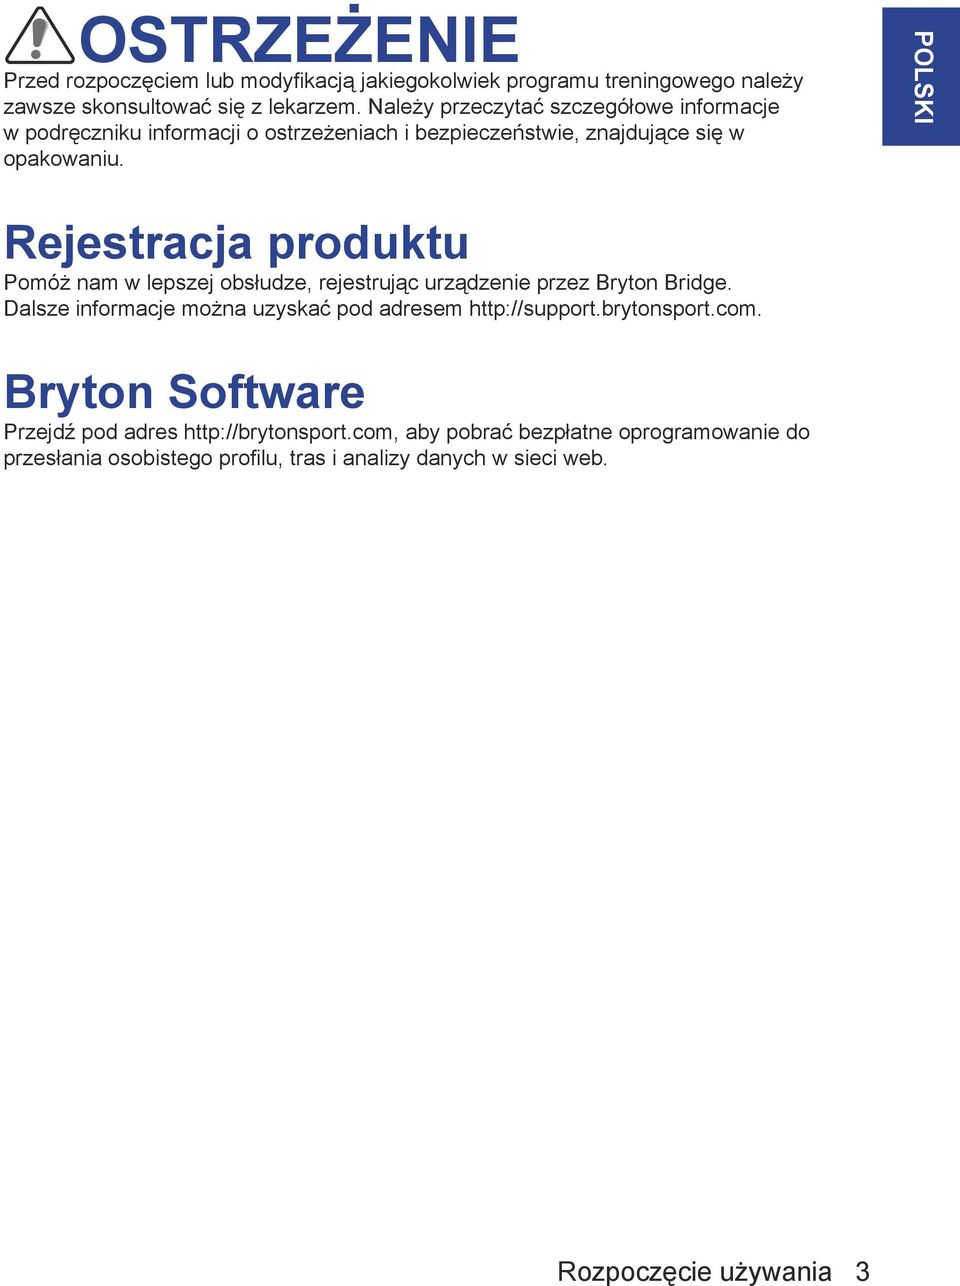 POLSKI Rejestracja produktu Pomóż nam w lepszej obsłudze, rejestrując urządzenie przez Bryton Bridge.